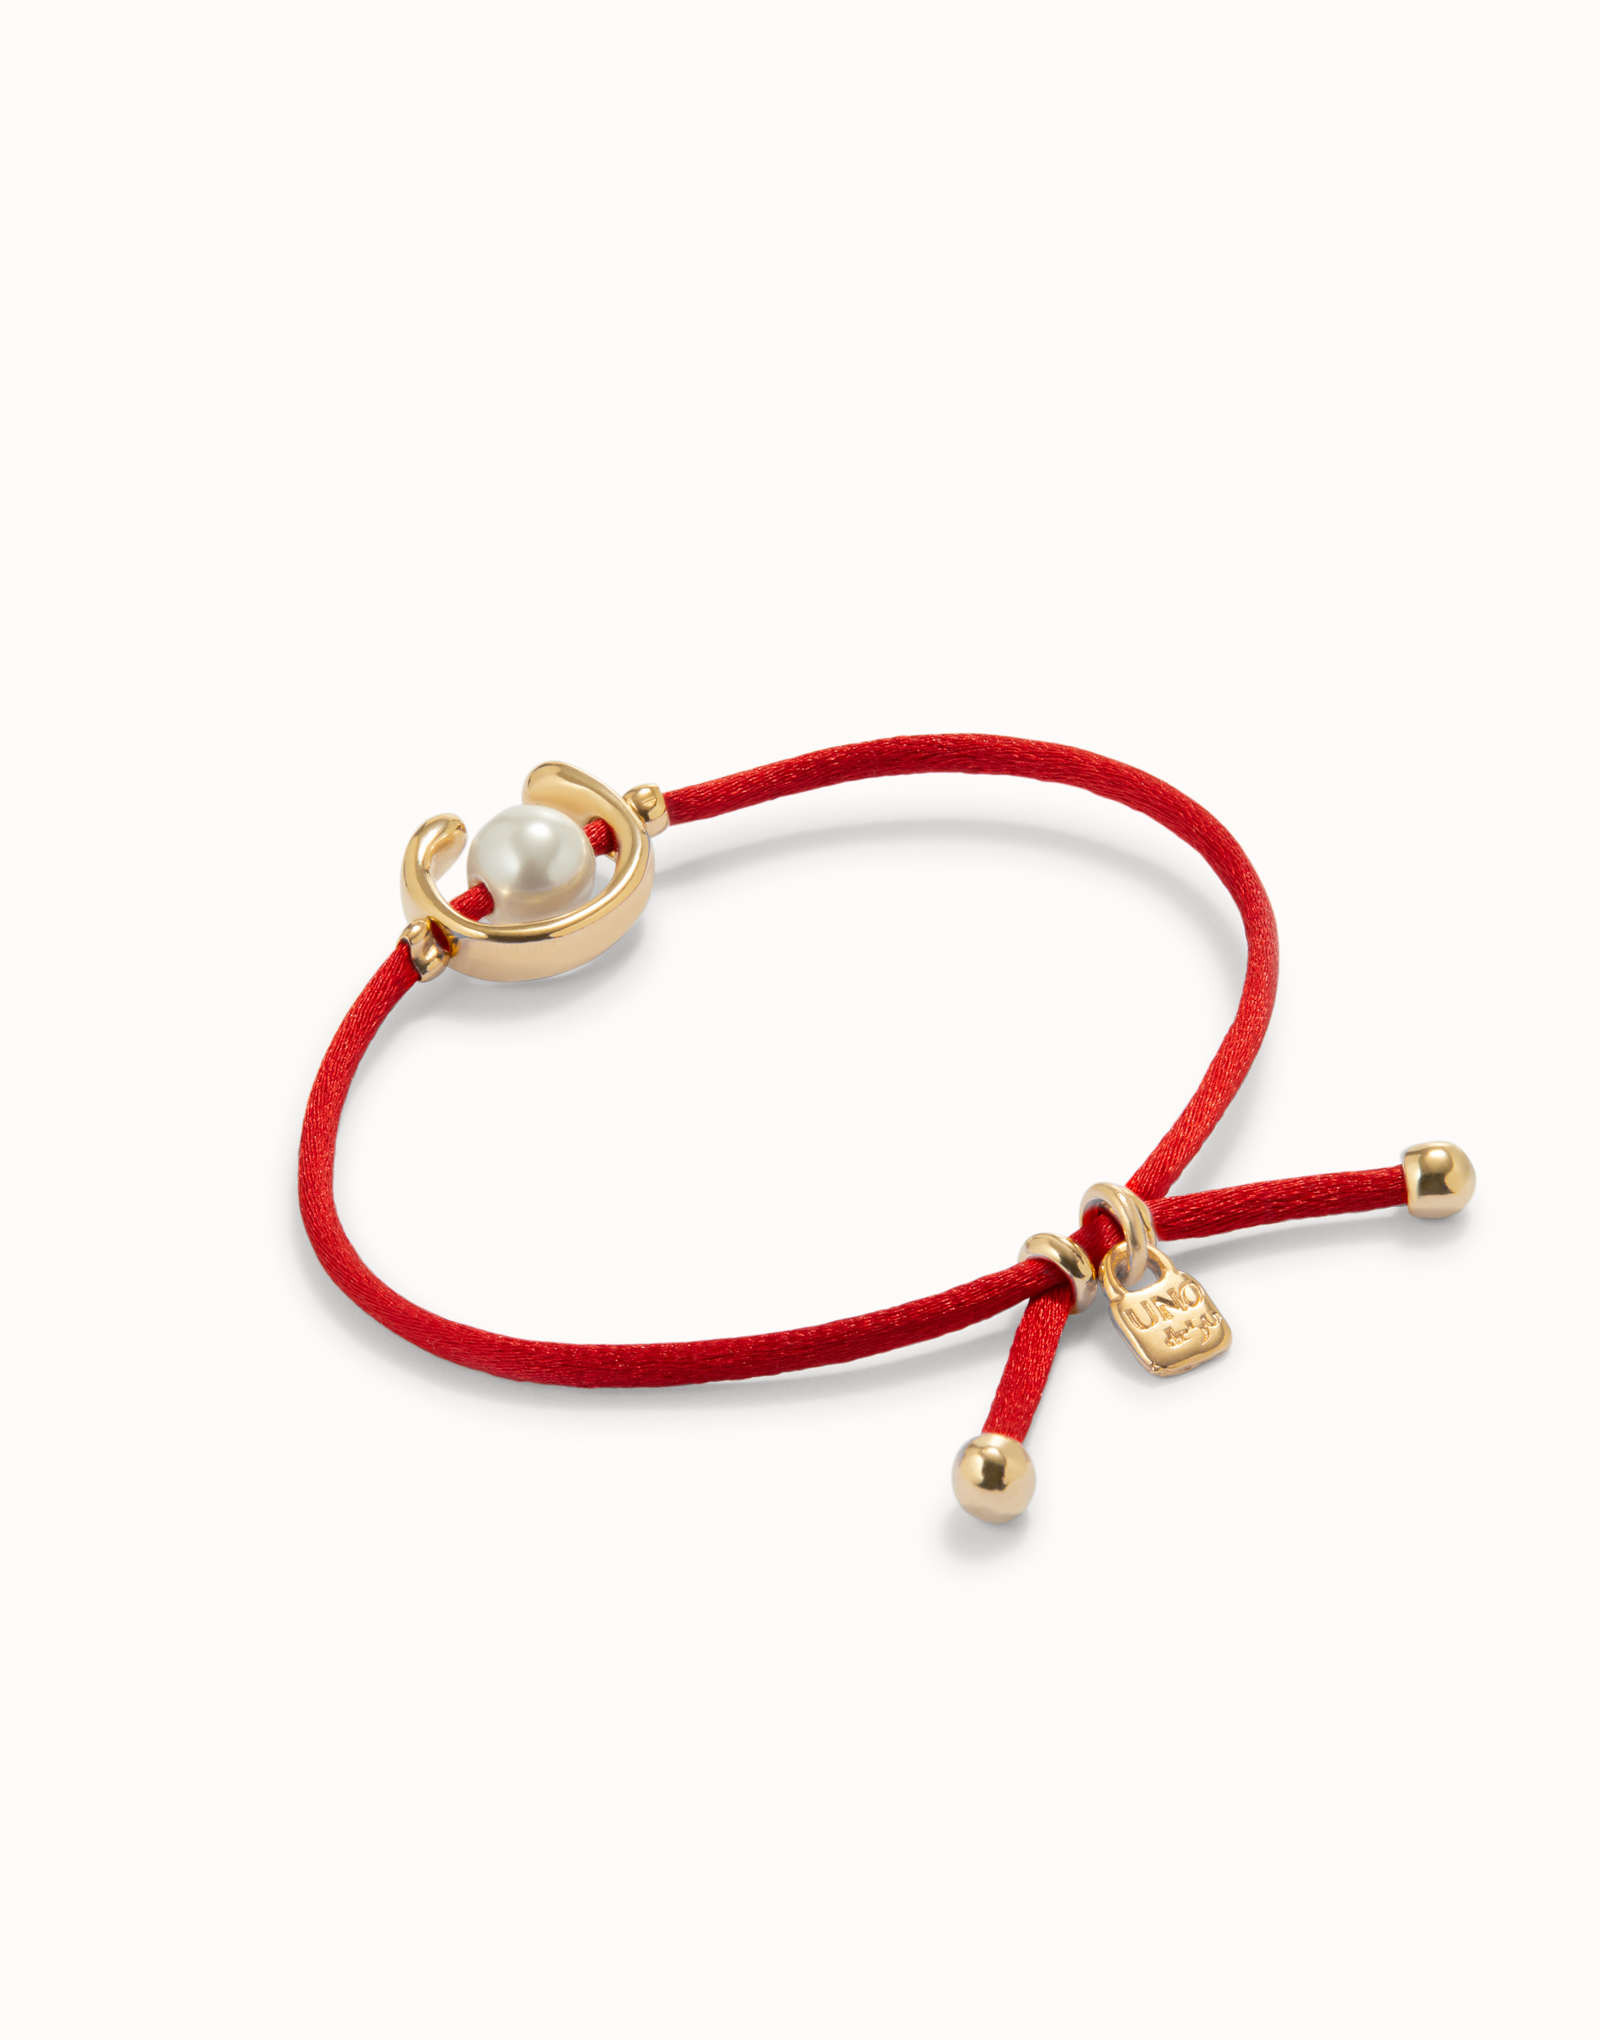 Bracciale in filo rosso con perla shell assortimento placcato oro 18k., Dorado, large image number null